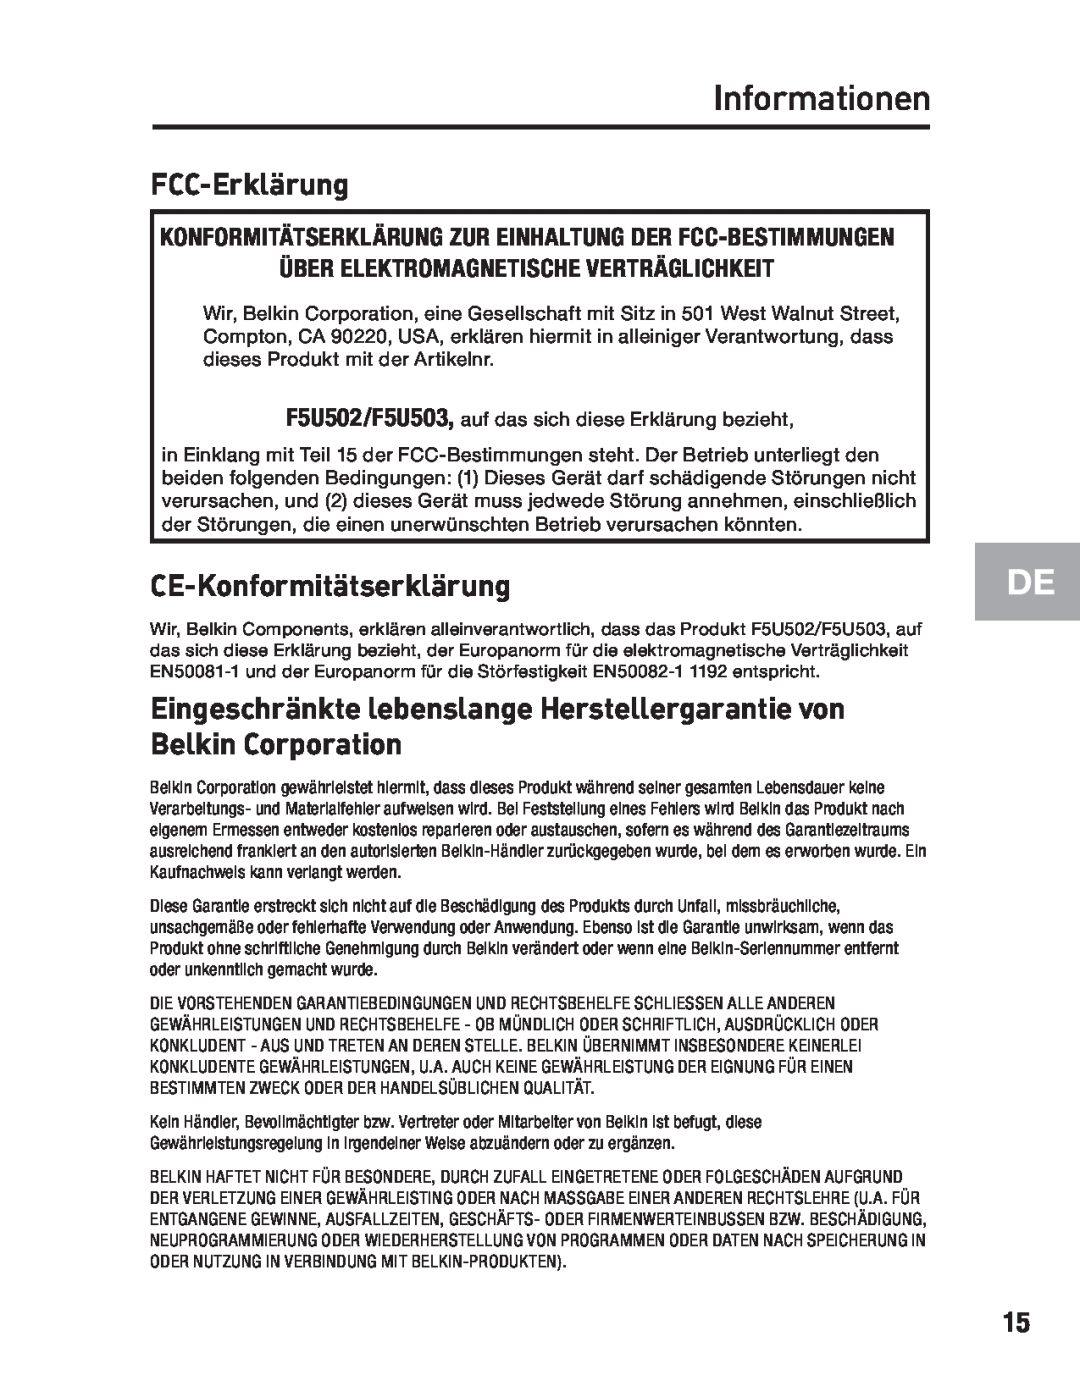 Belkin F5U502, F5U503 user manual Informationen, FCC-Erklärung, CE-Konformitätserklärung 